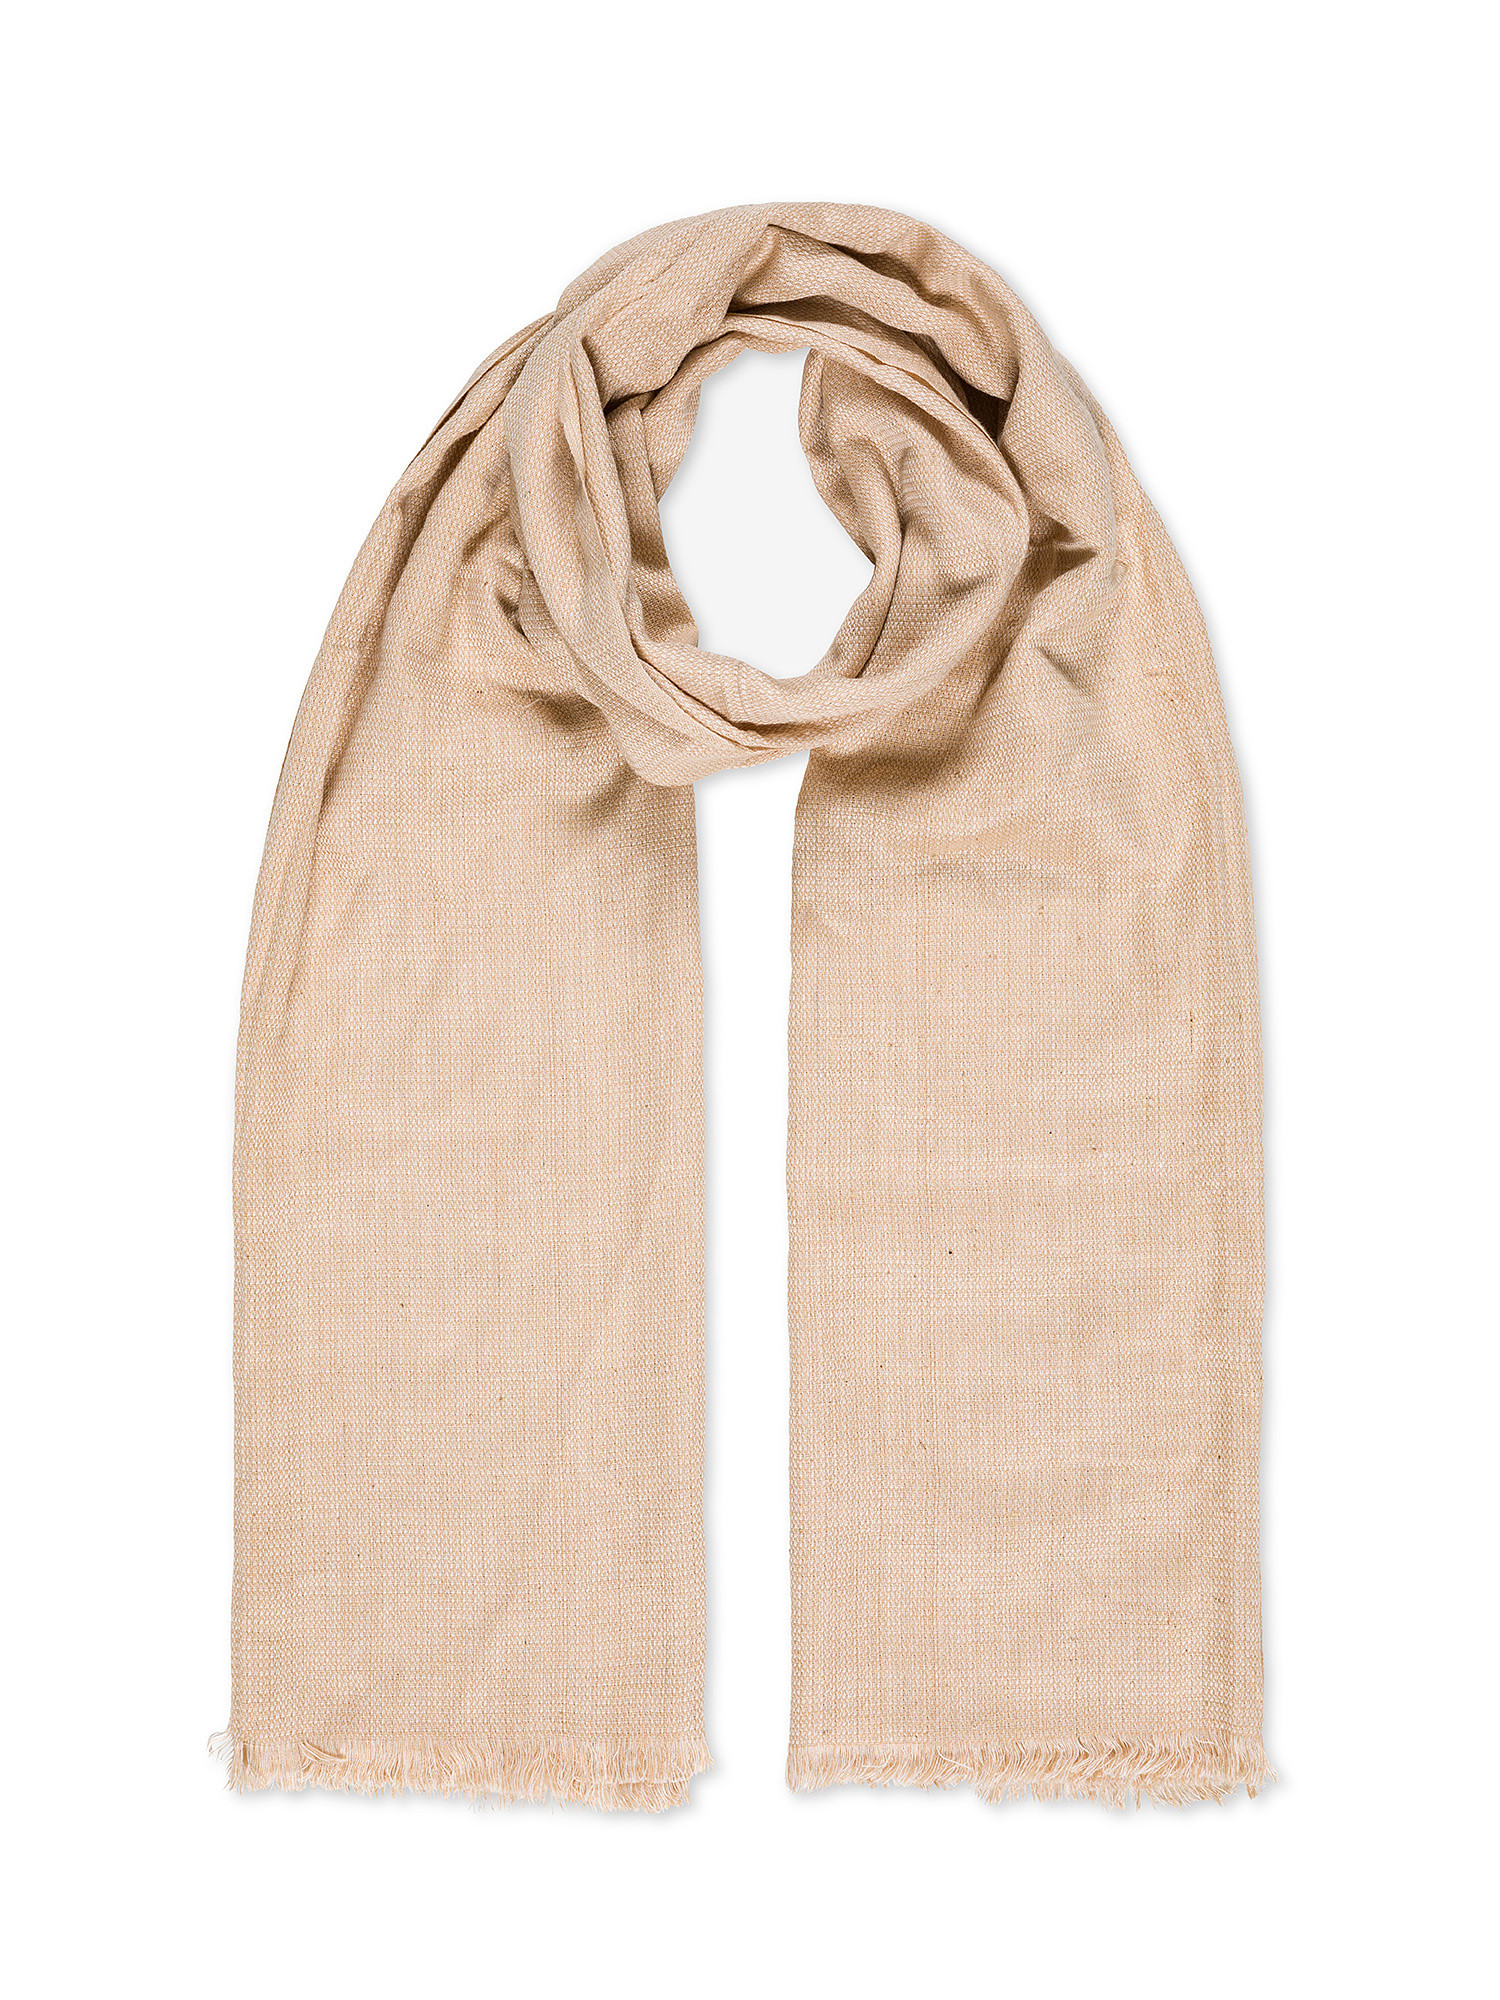 Luca D'Altieri - Cotton scarf, Beige, large image number 0